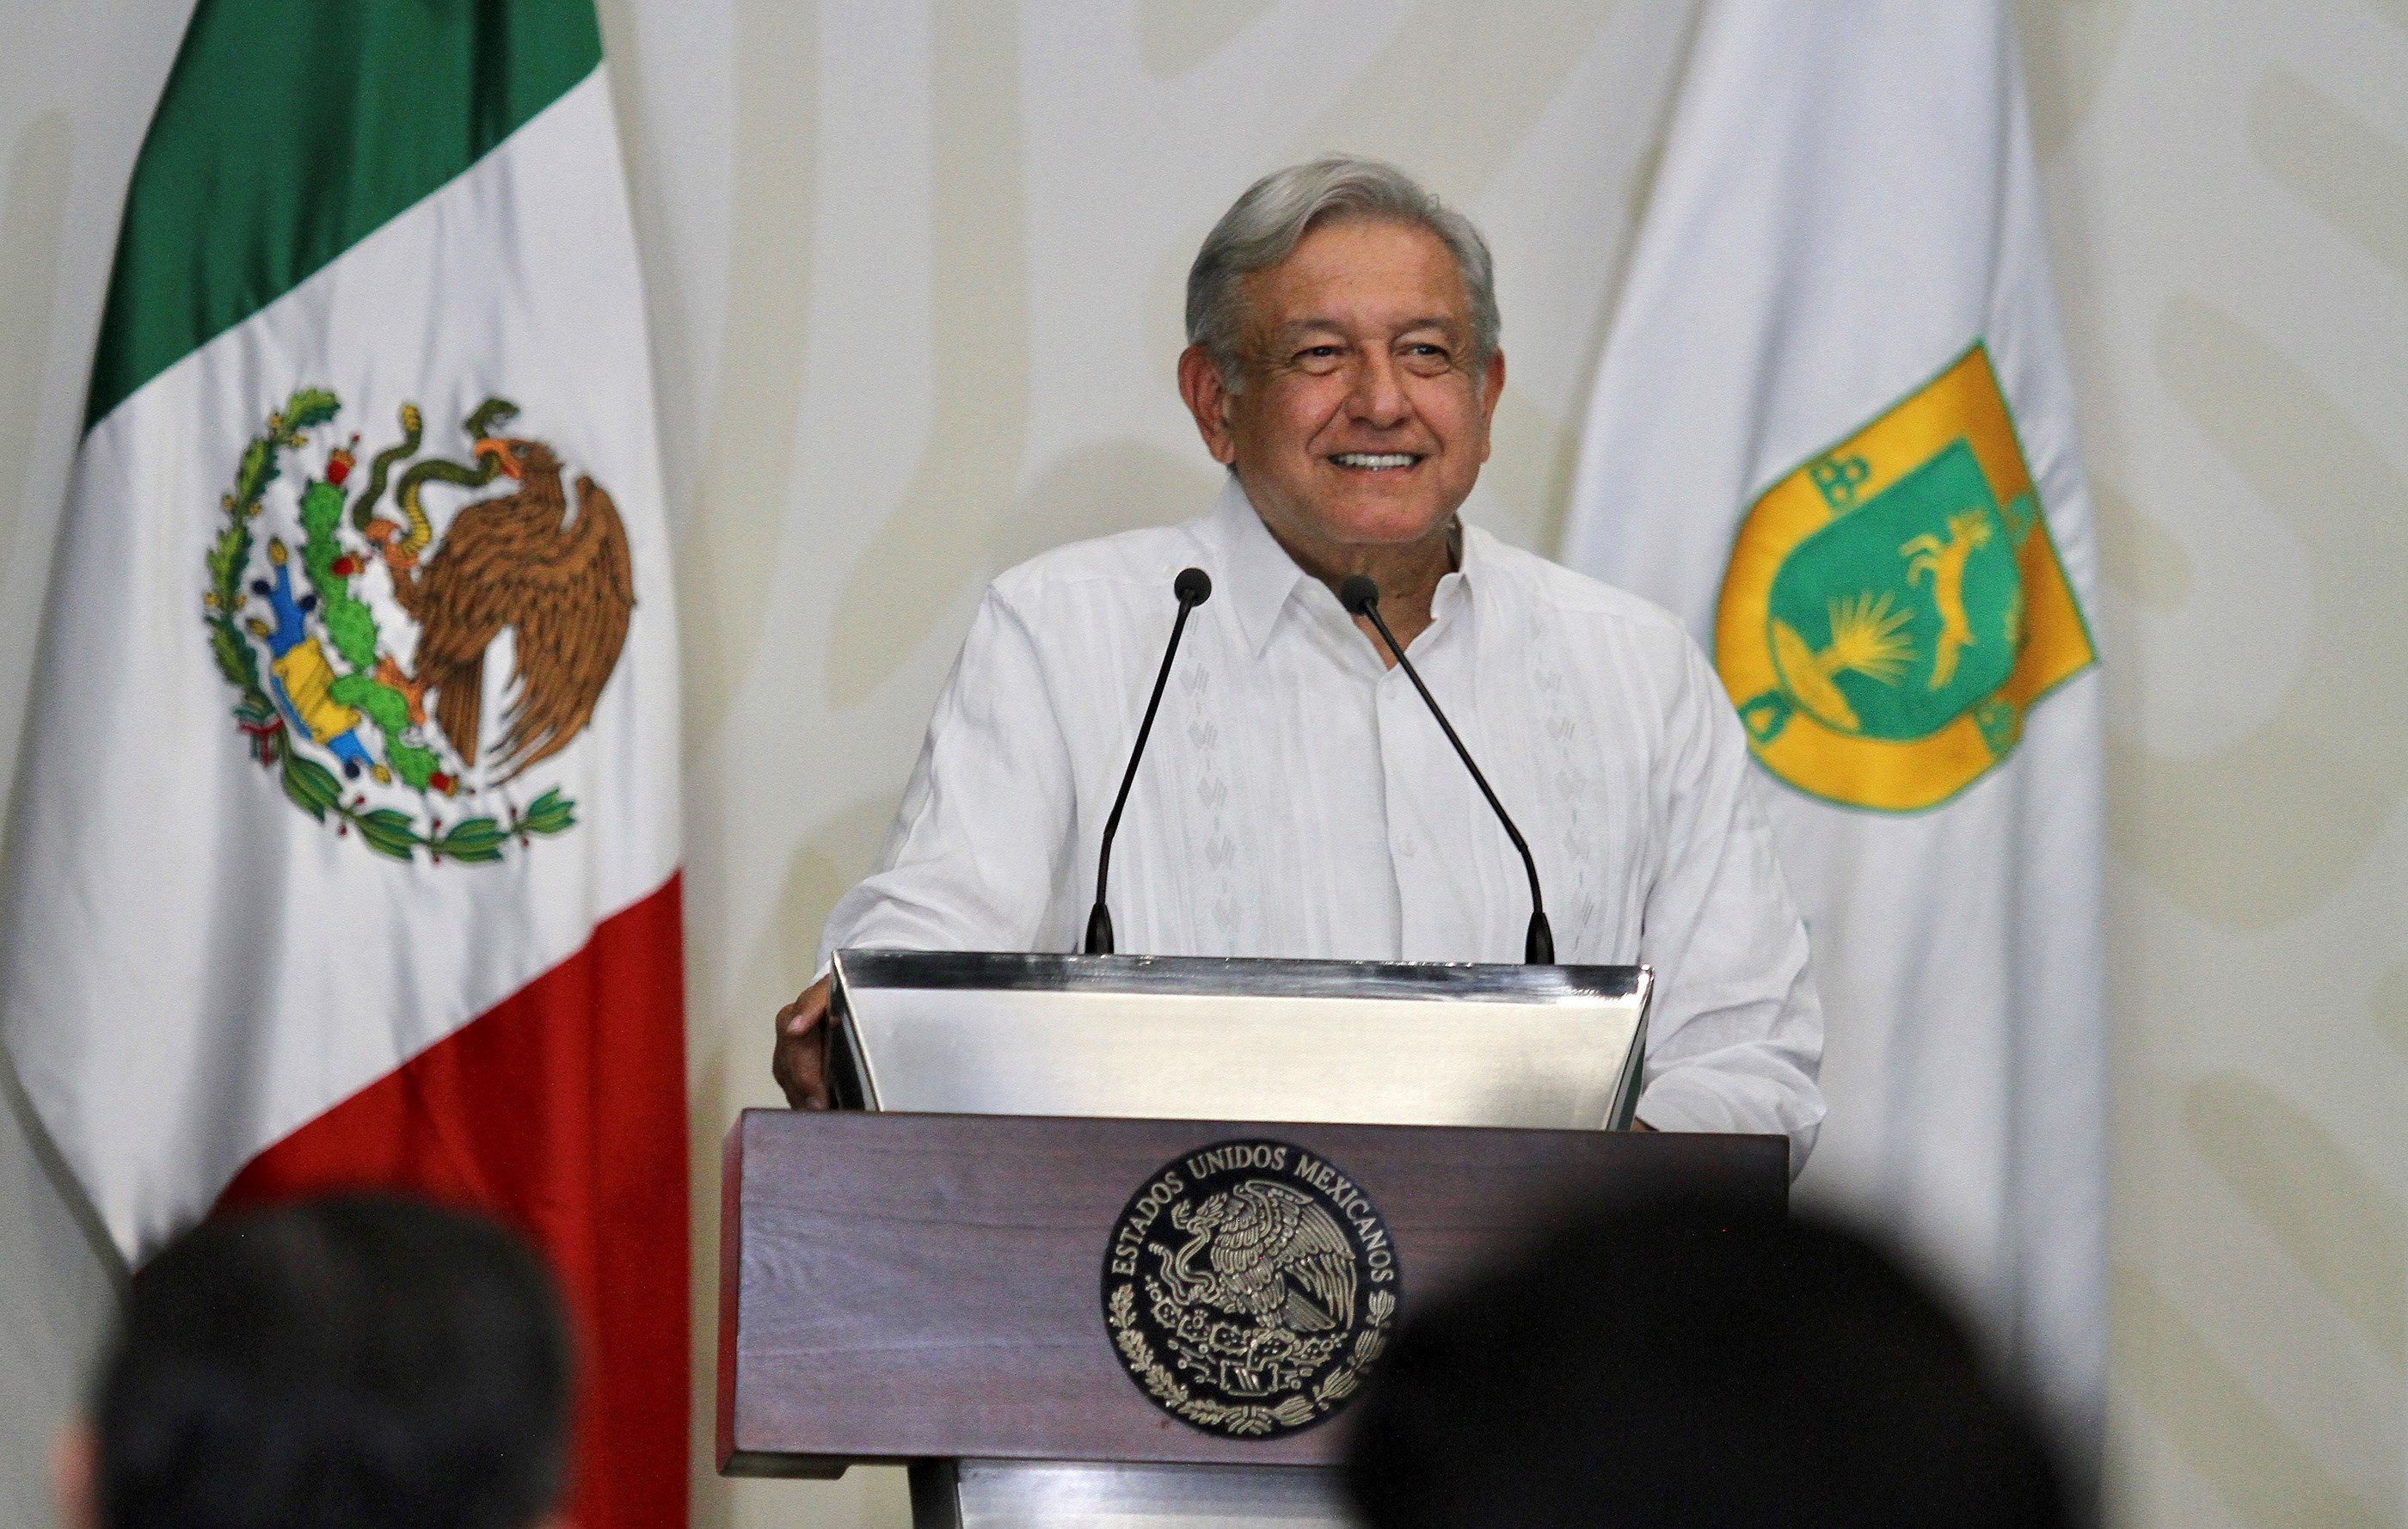  López Obrador abre posibilidad de que exista la “muerte asistida” en México